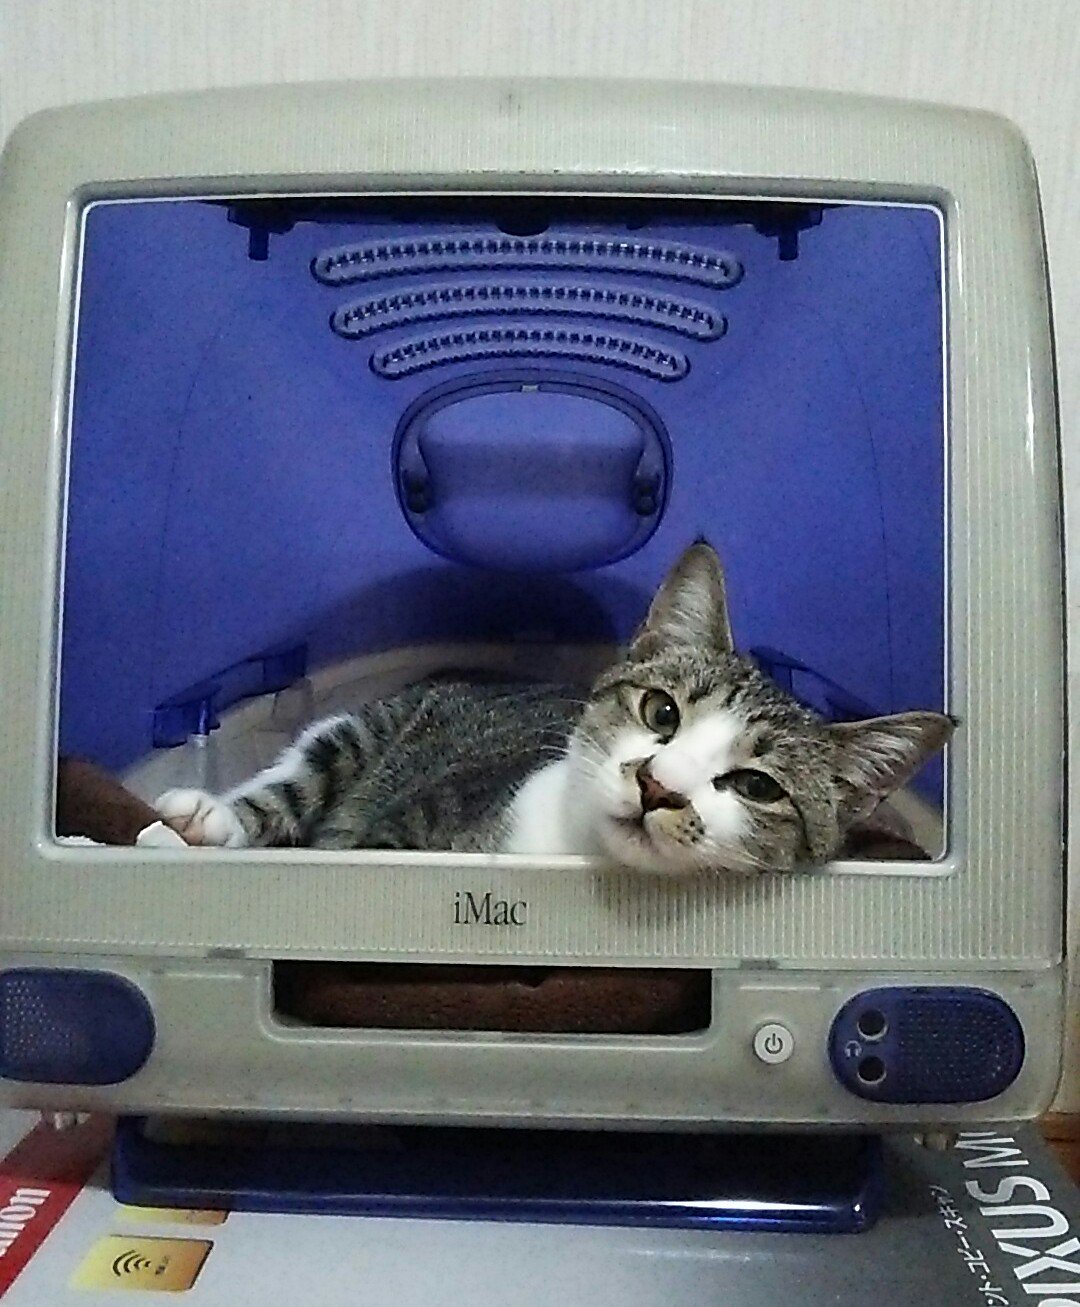 iMac＋ネコ＝iCat？猫ハウス化したiMac / Twitter